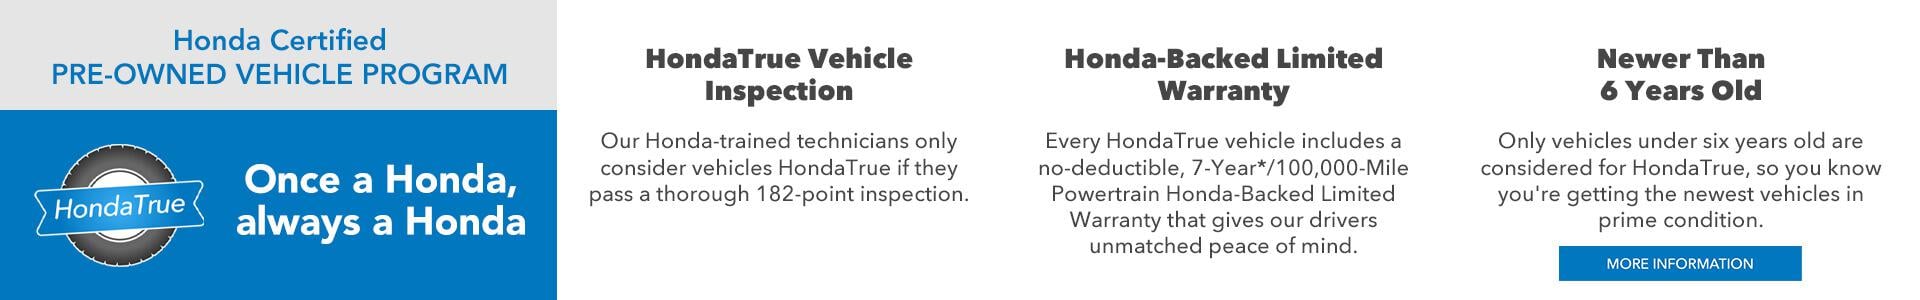 Honda CPO Program General Info